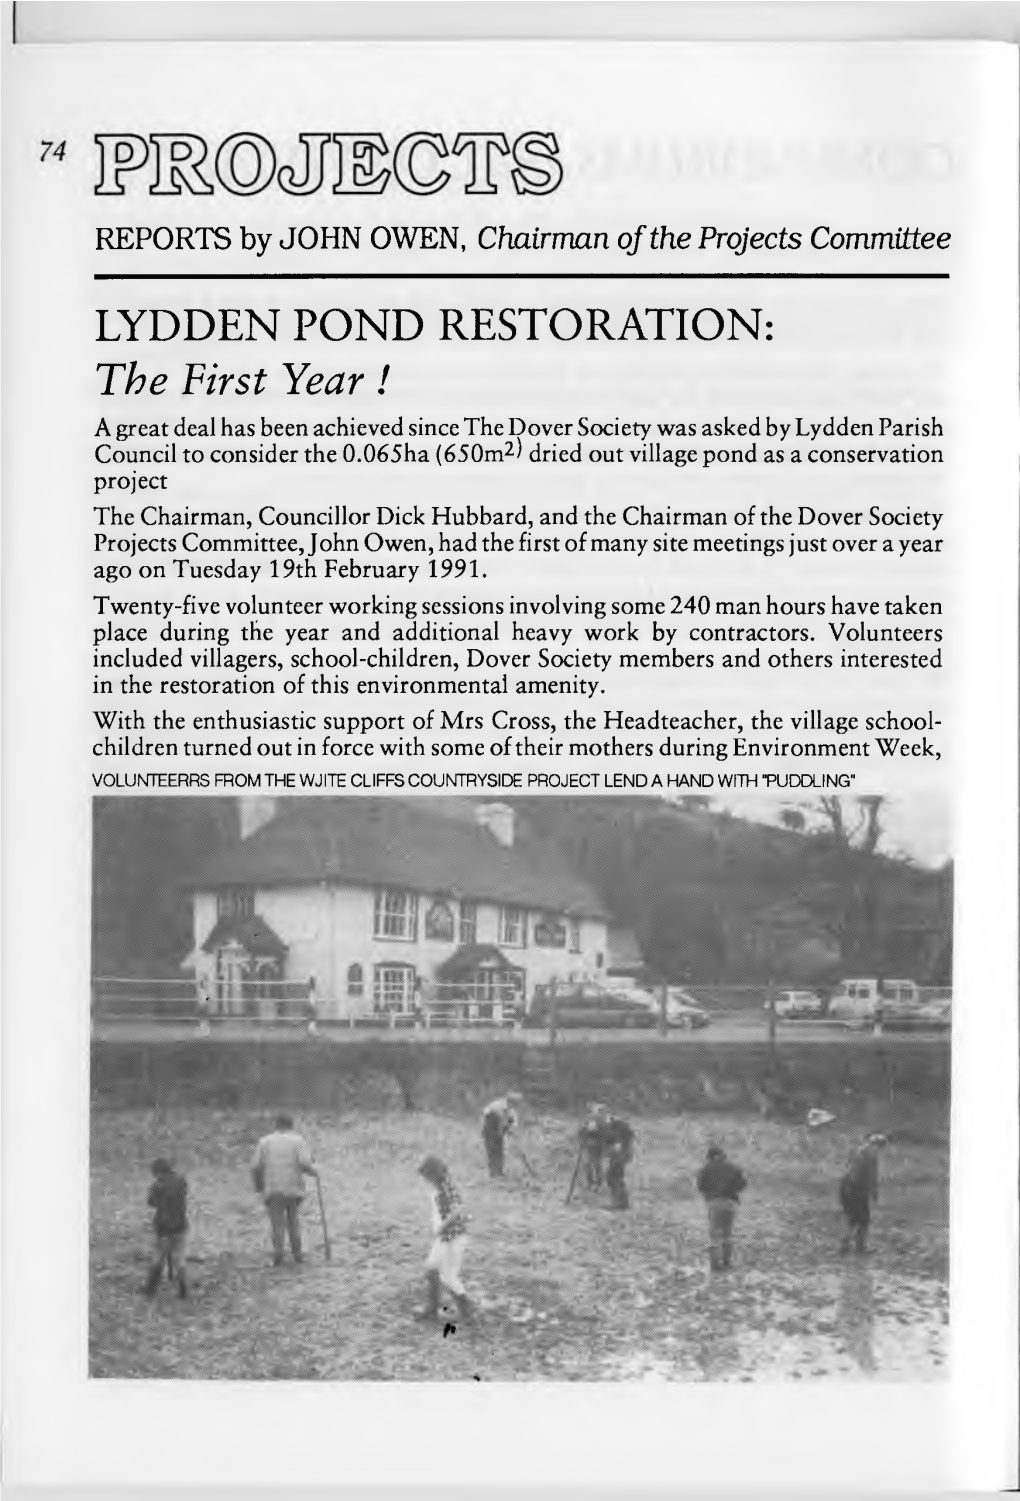 Lydden Pond Restoration